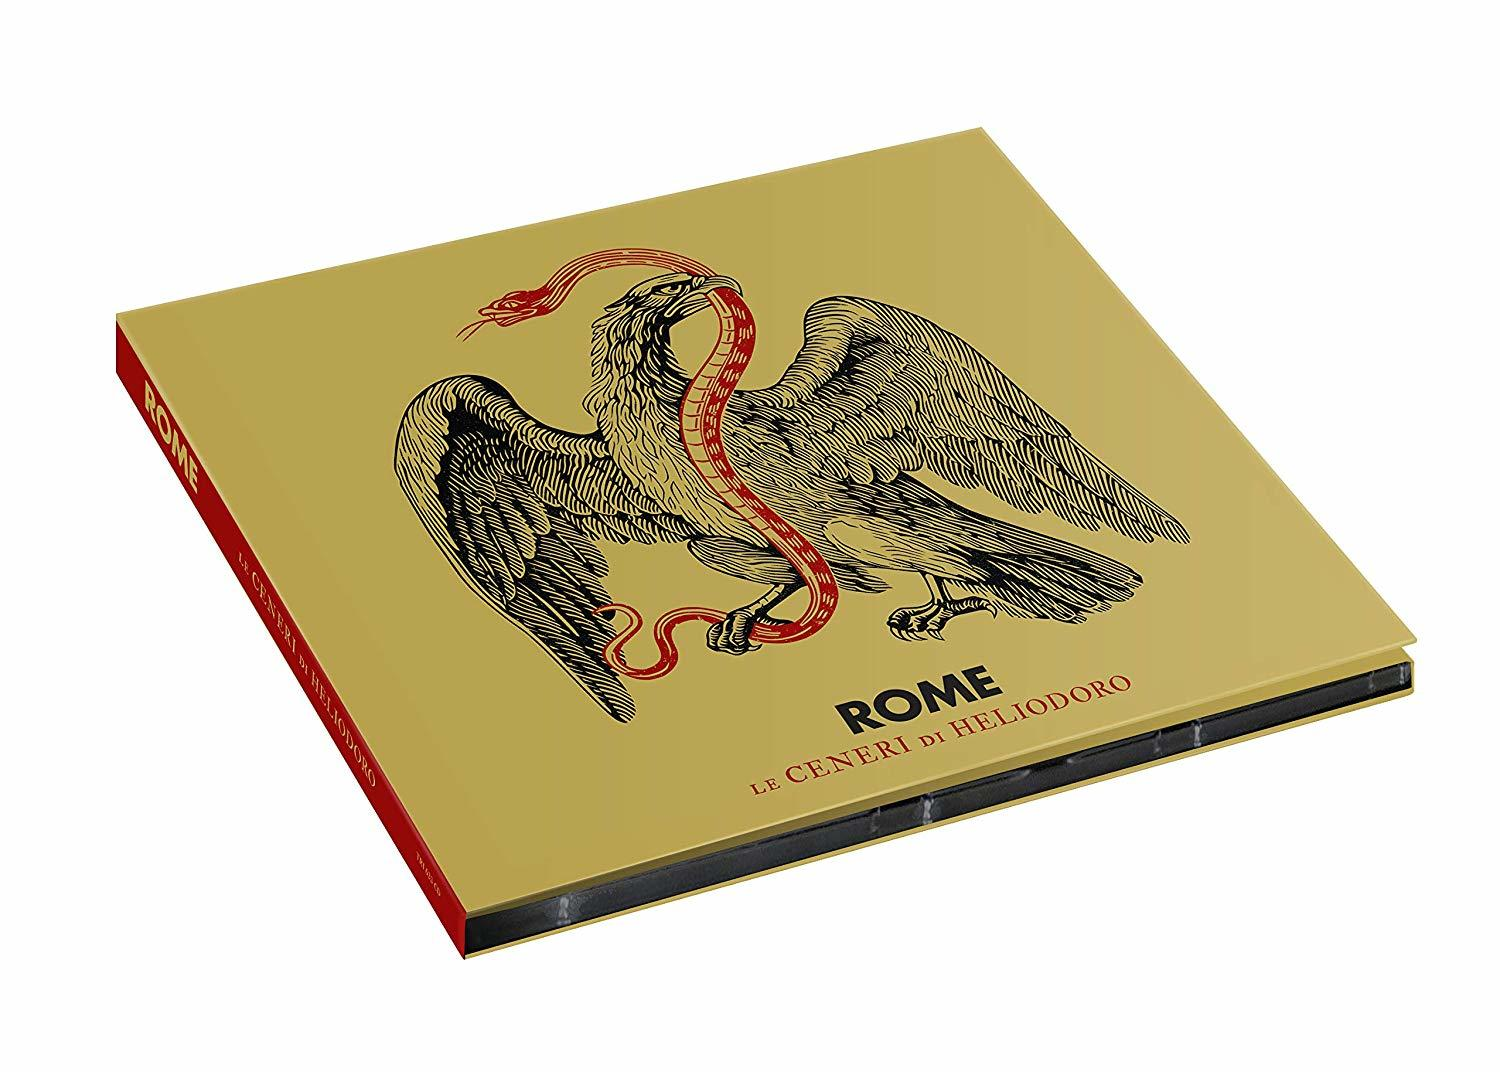 Rome - Di Ceneri Le Heliodoro (CD) 